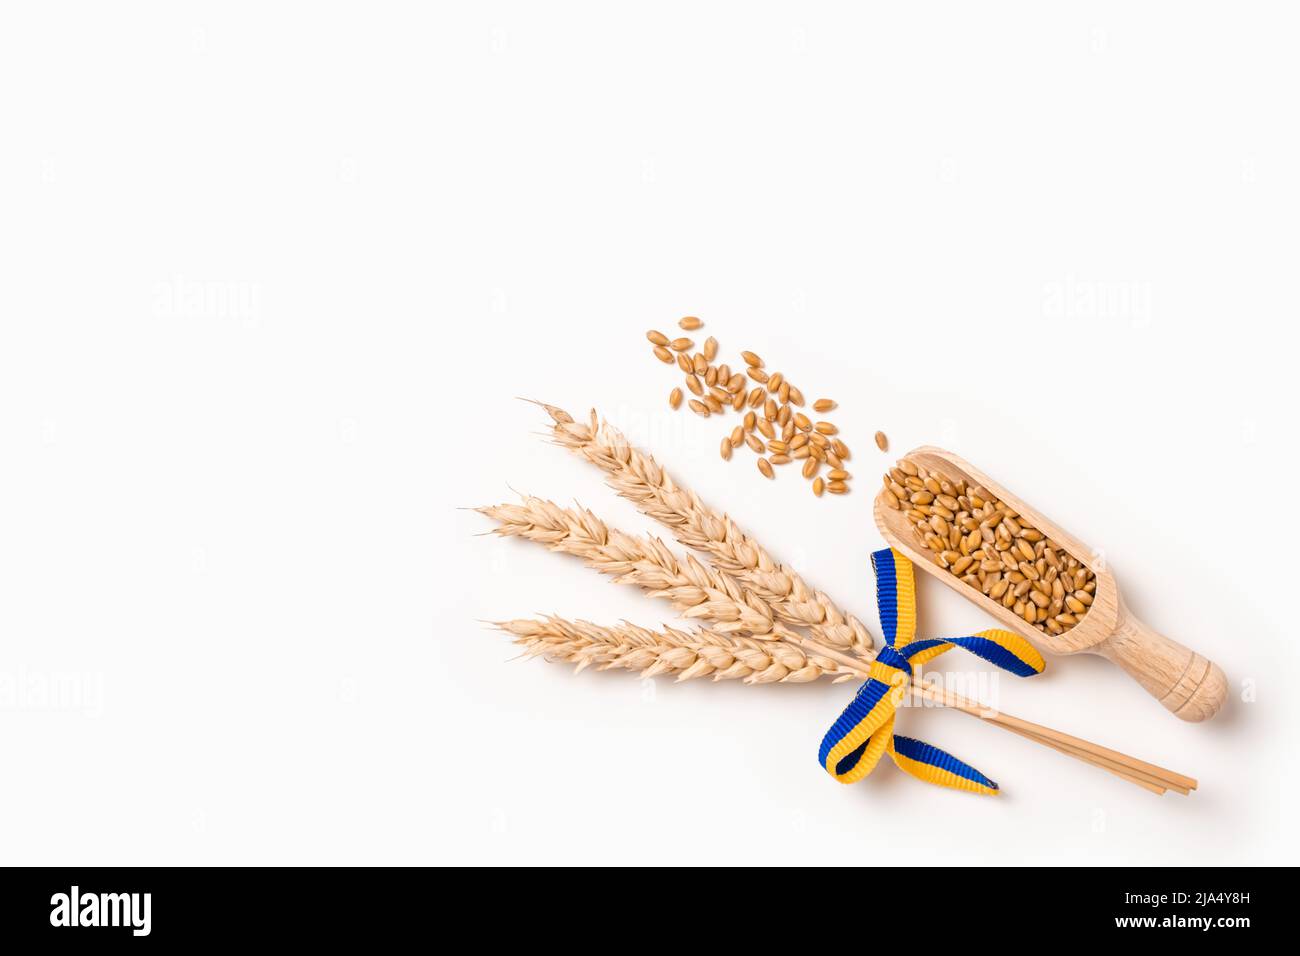 Weizenkorn auf Holzlöffel und ein Paket von Weizenspitzen mit gelbem und blauem Band in den Farben der ukrainischen Flagge isoliert auf weiß. Konzept der Ukraine Stockfoto